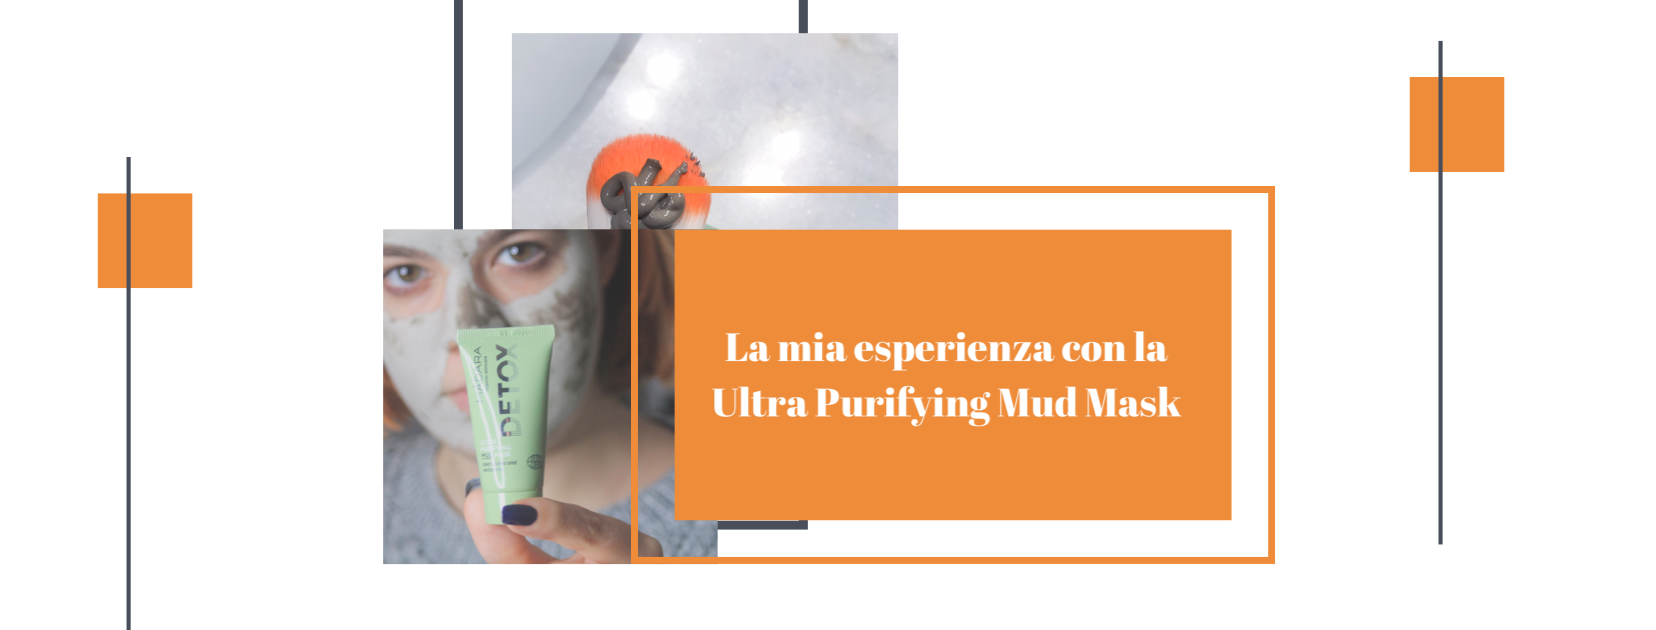 La mia esperienza con la Ultra Purfying Mud Mask di Madara